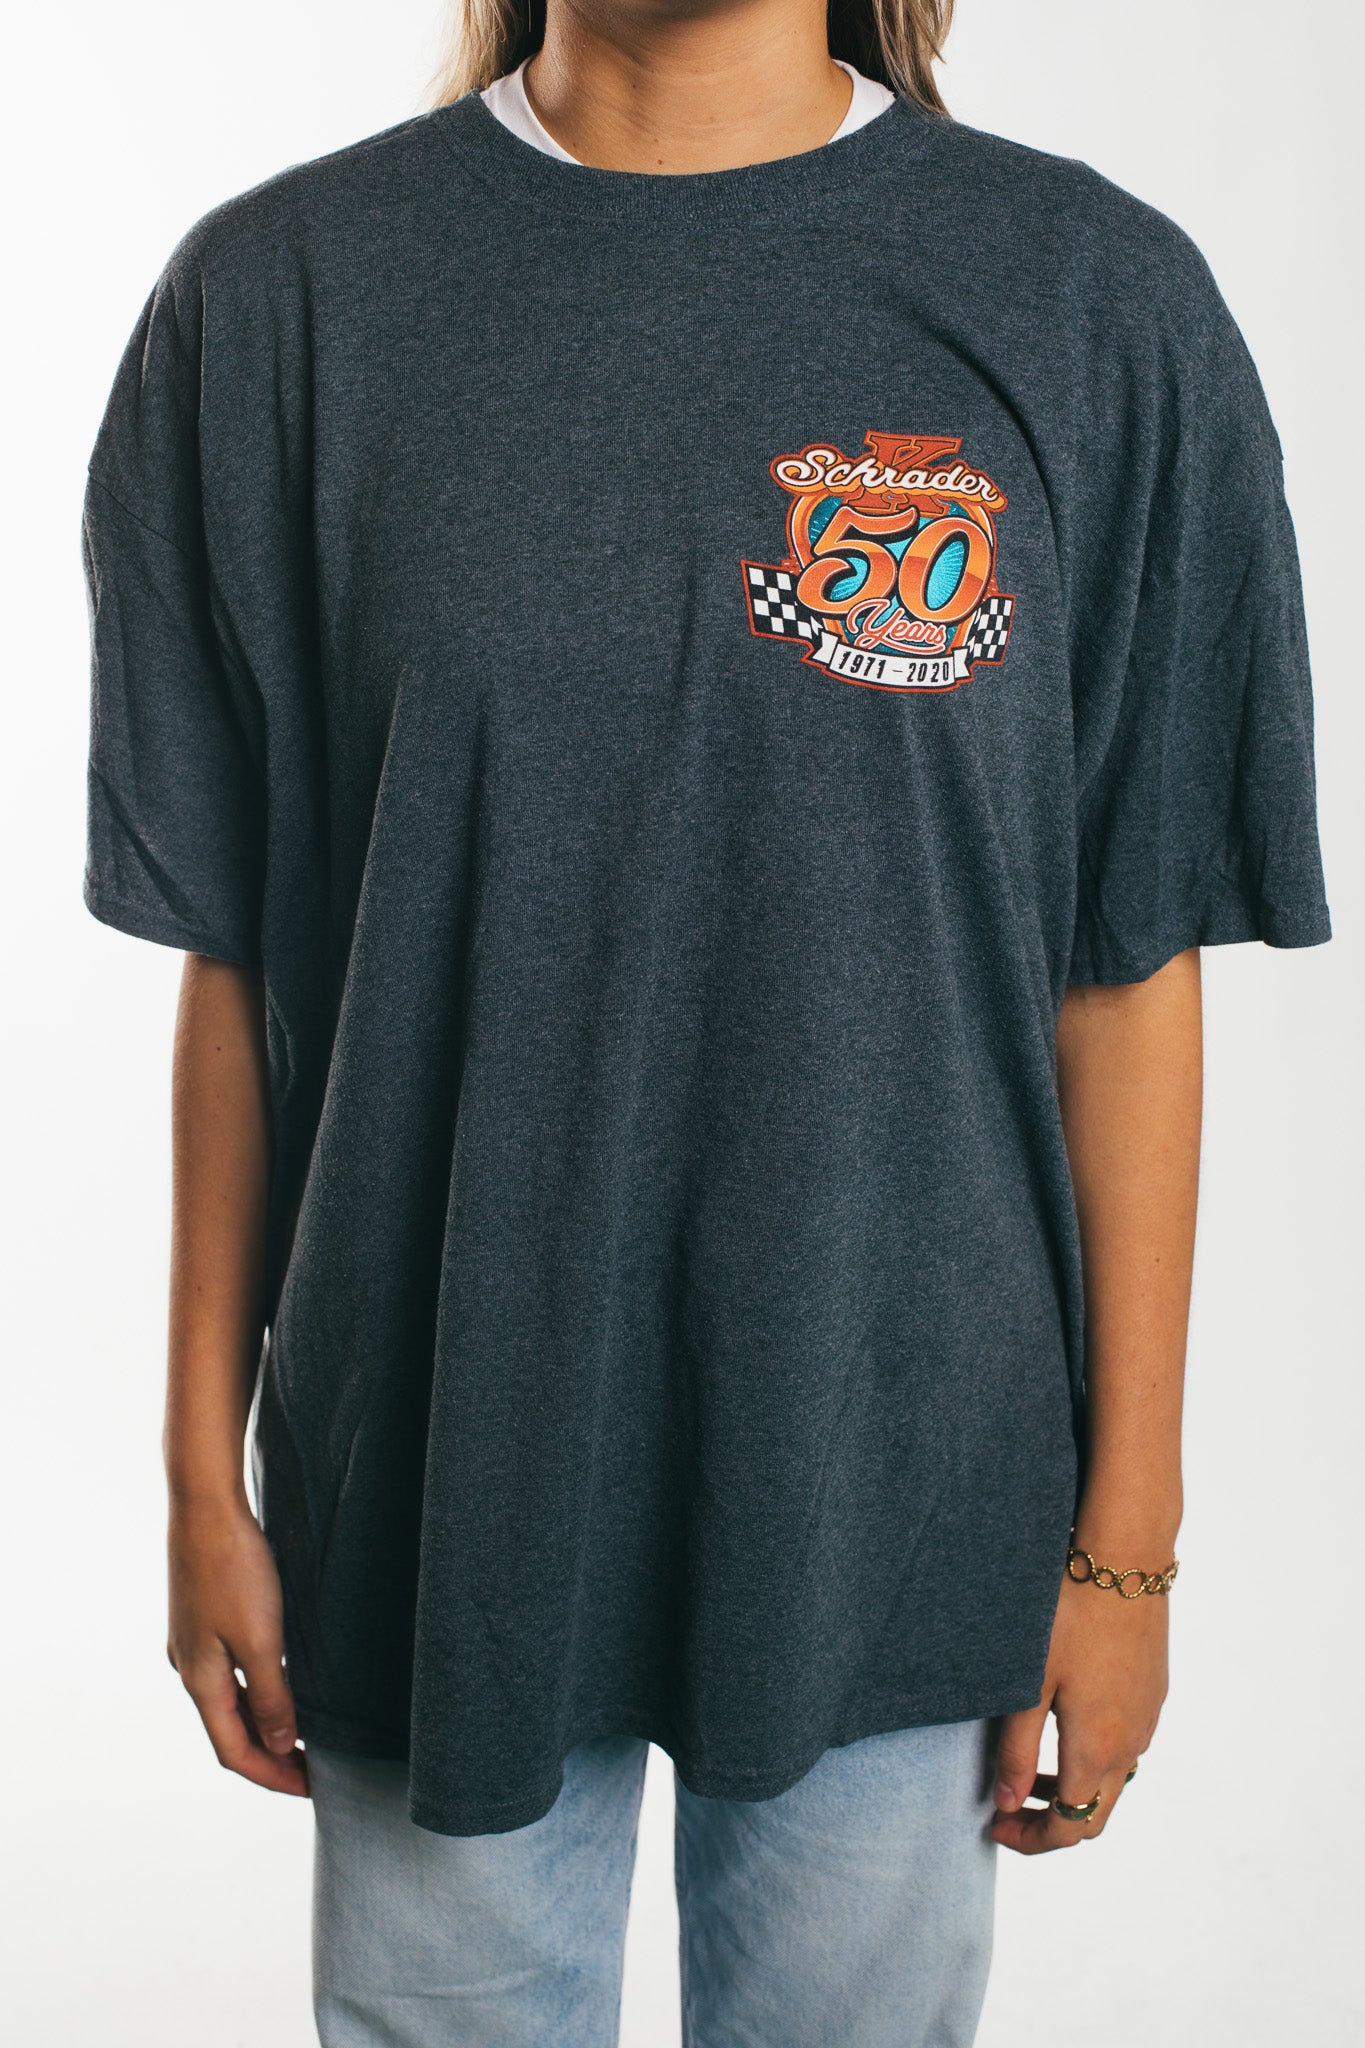 Schrader 50 Years - T-Shirt (L)